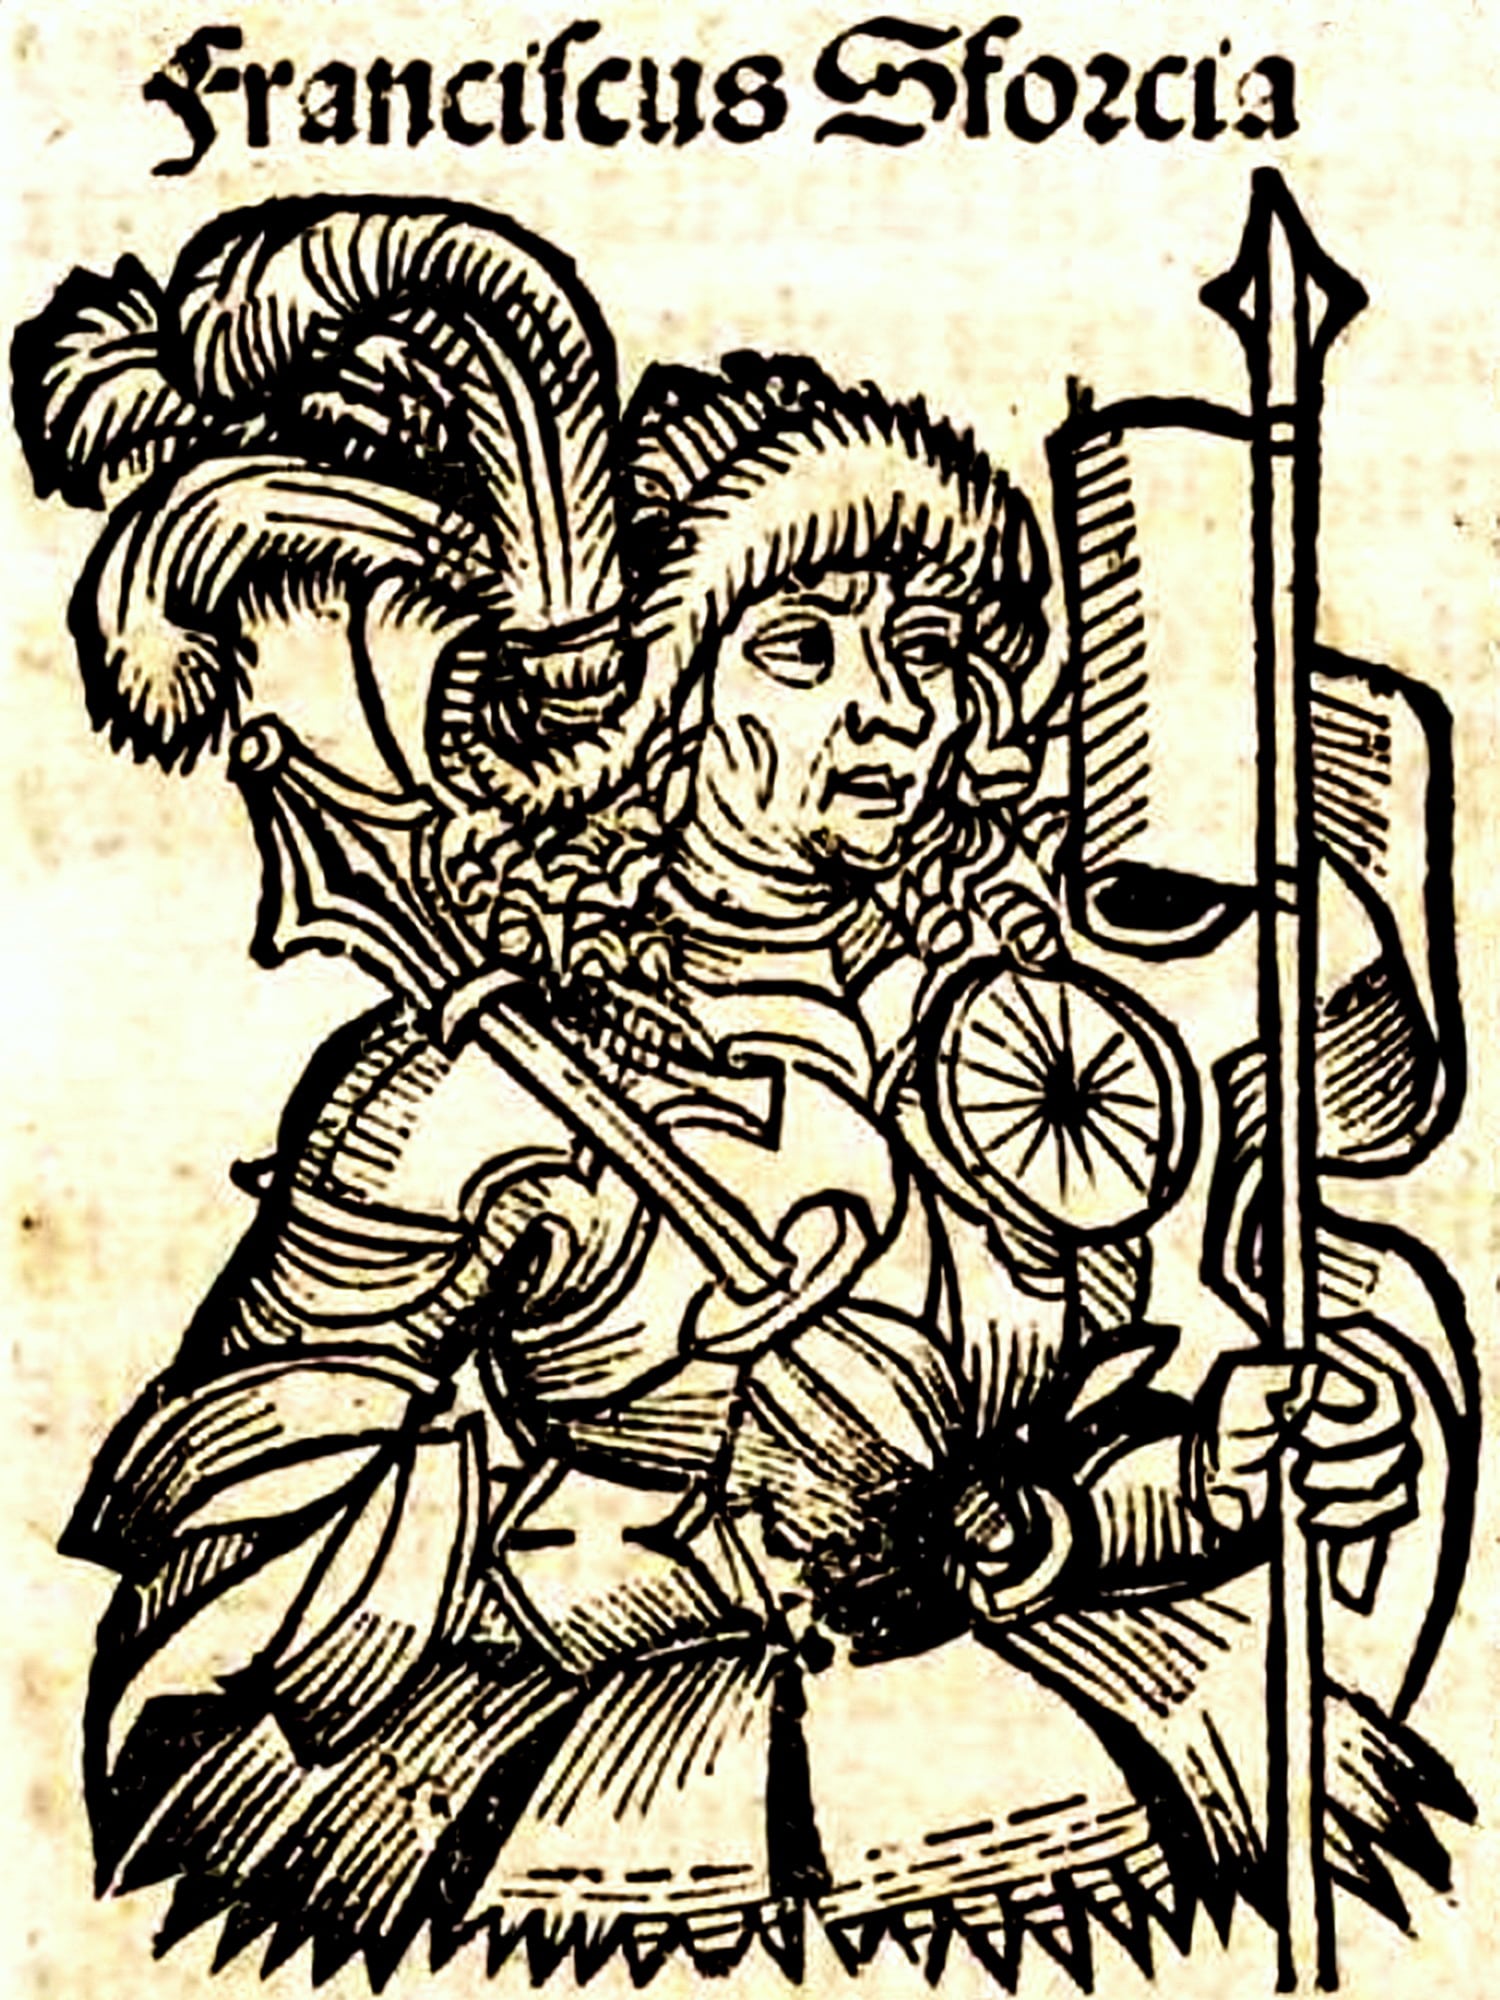 Wilhelm Pleydenwurff (1460-1494), “Franciscus Sforcia”, 1493, xilografia. Tratta da: Hartmann Schedel (1440-1514), “Weltchronik”, Anton Koberger, Norimberga 1493